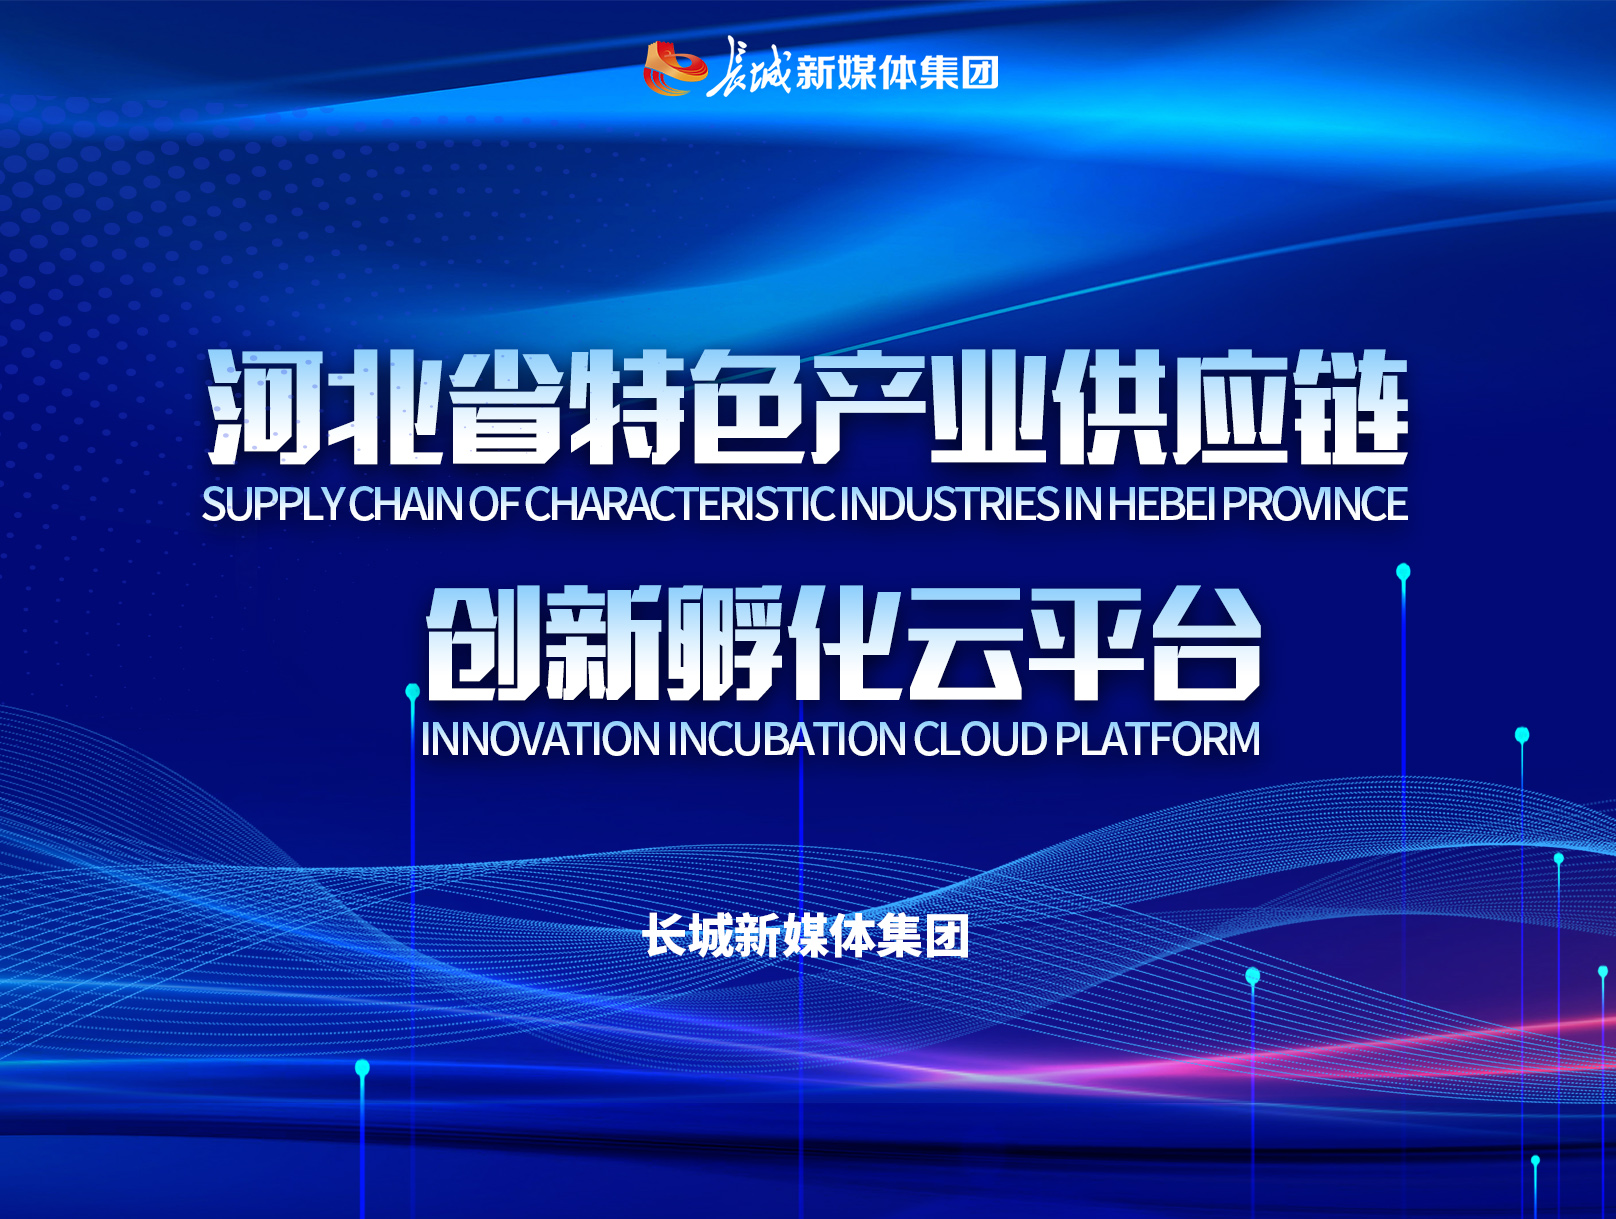 【专题】河北省特色产业供应链创新孵化云平台